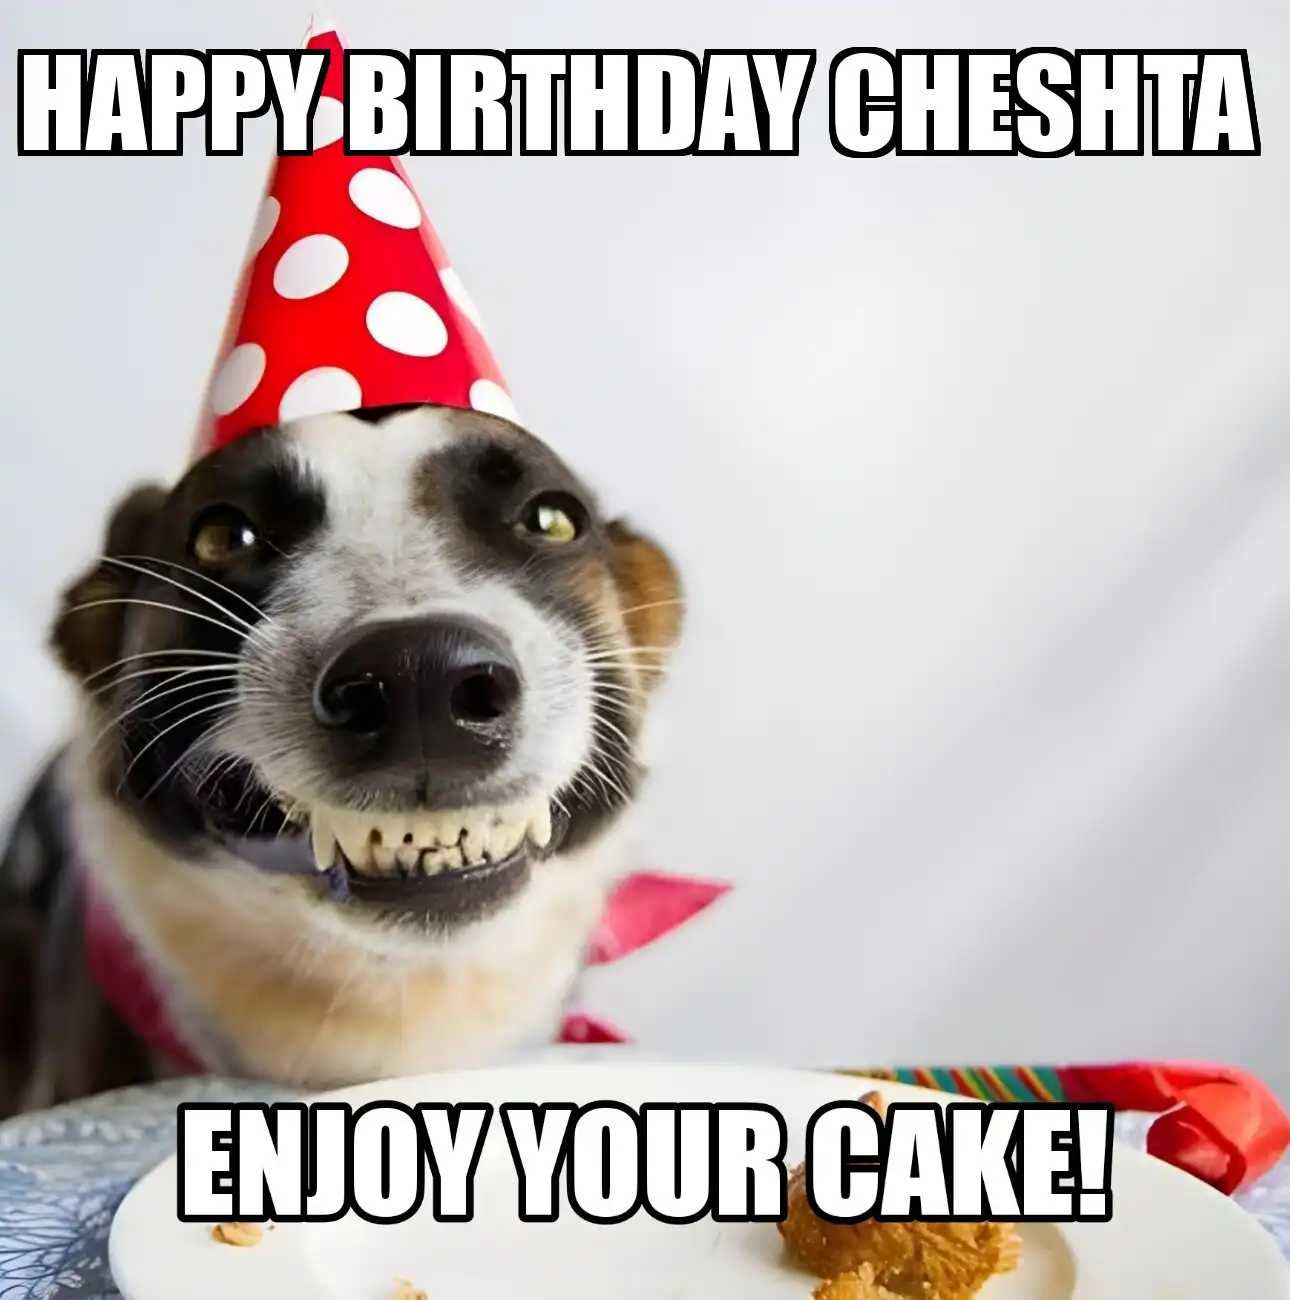 Happy Birthday Cheshta Enjoy Your Cake Dog Meme